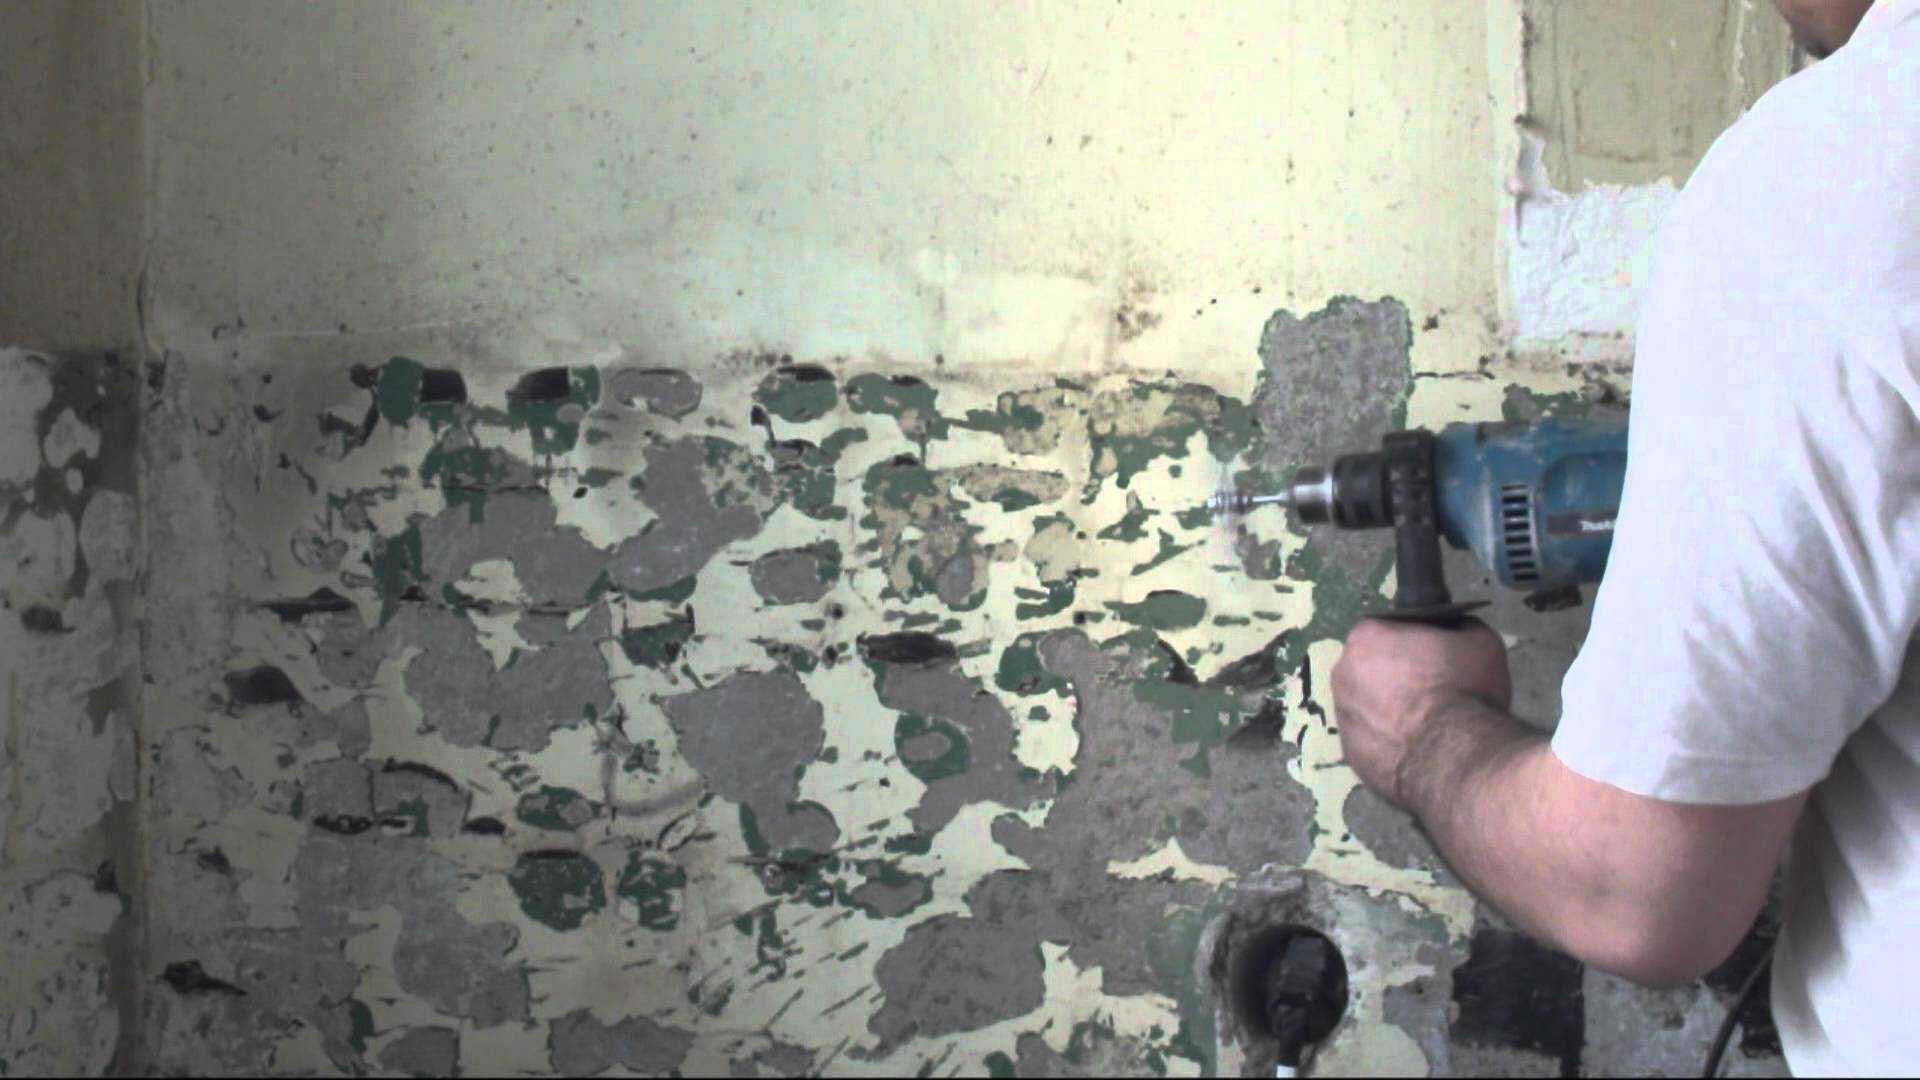 Как удалить масляную краску с бетонной стены